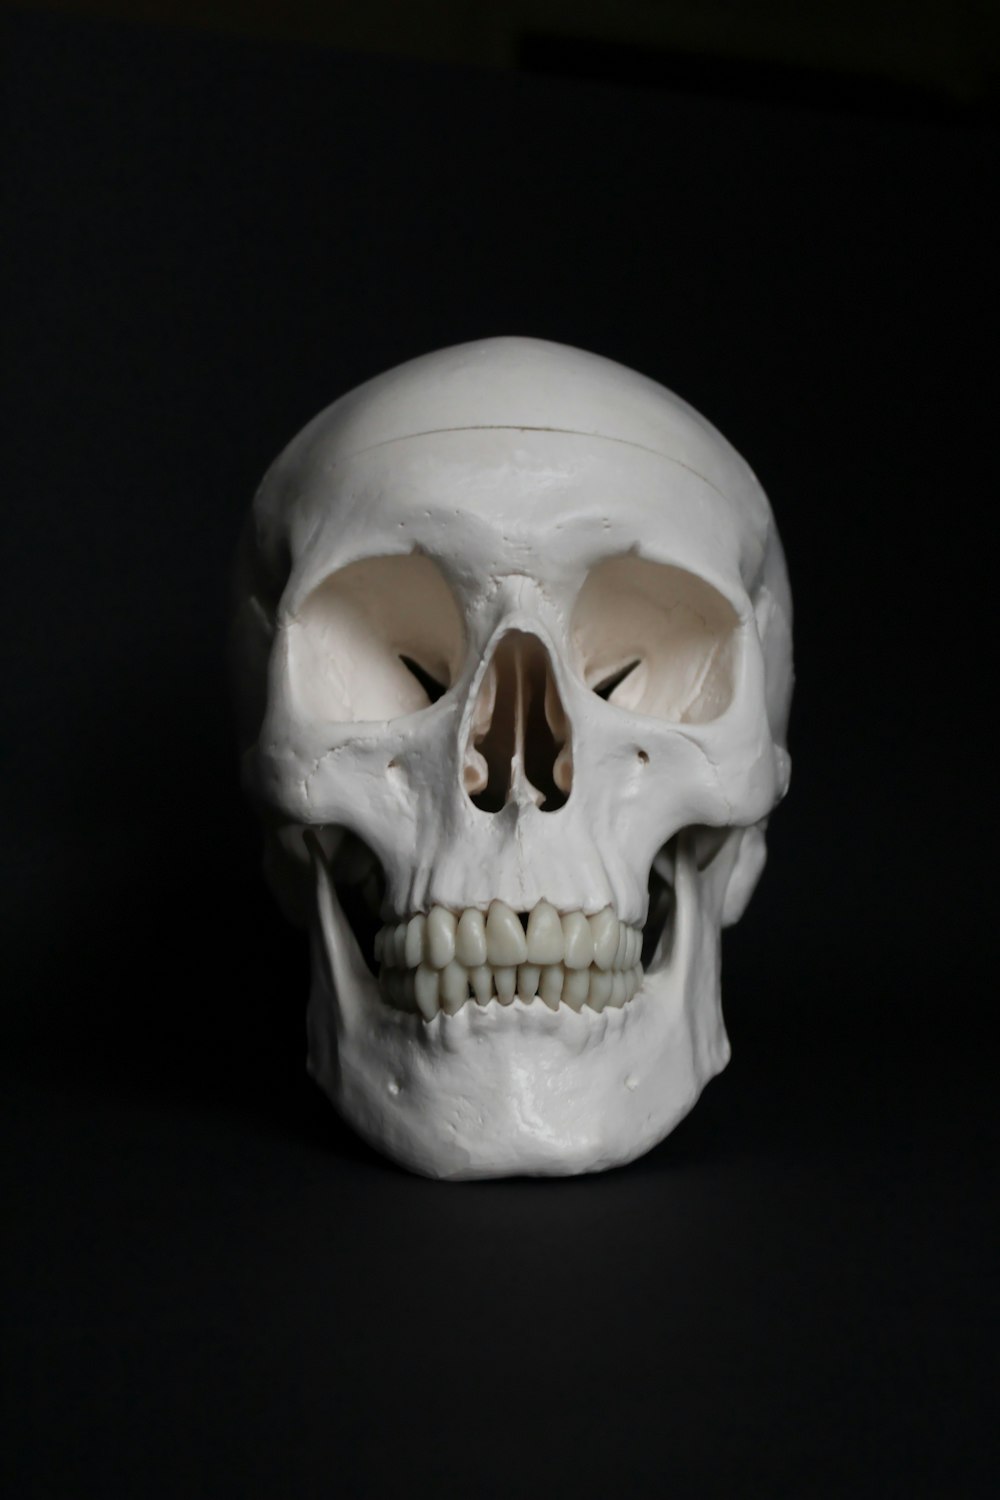 white skull on black surface